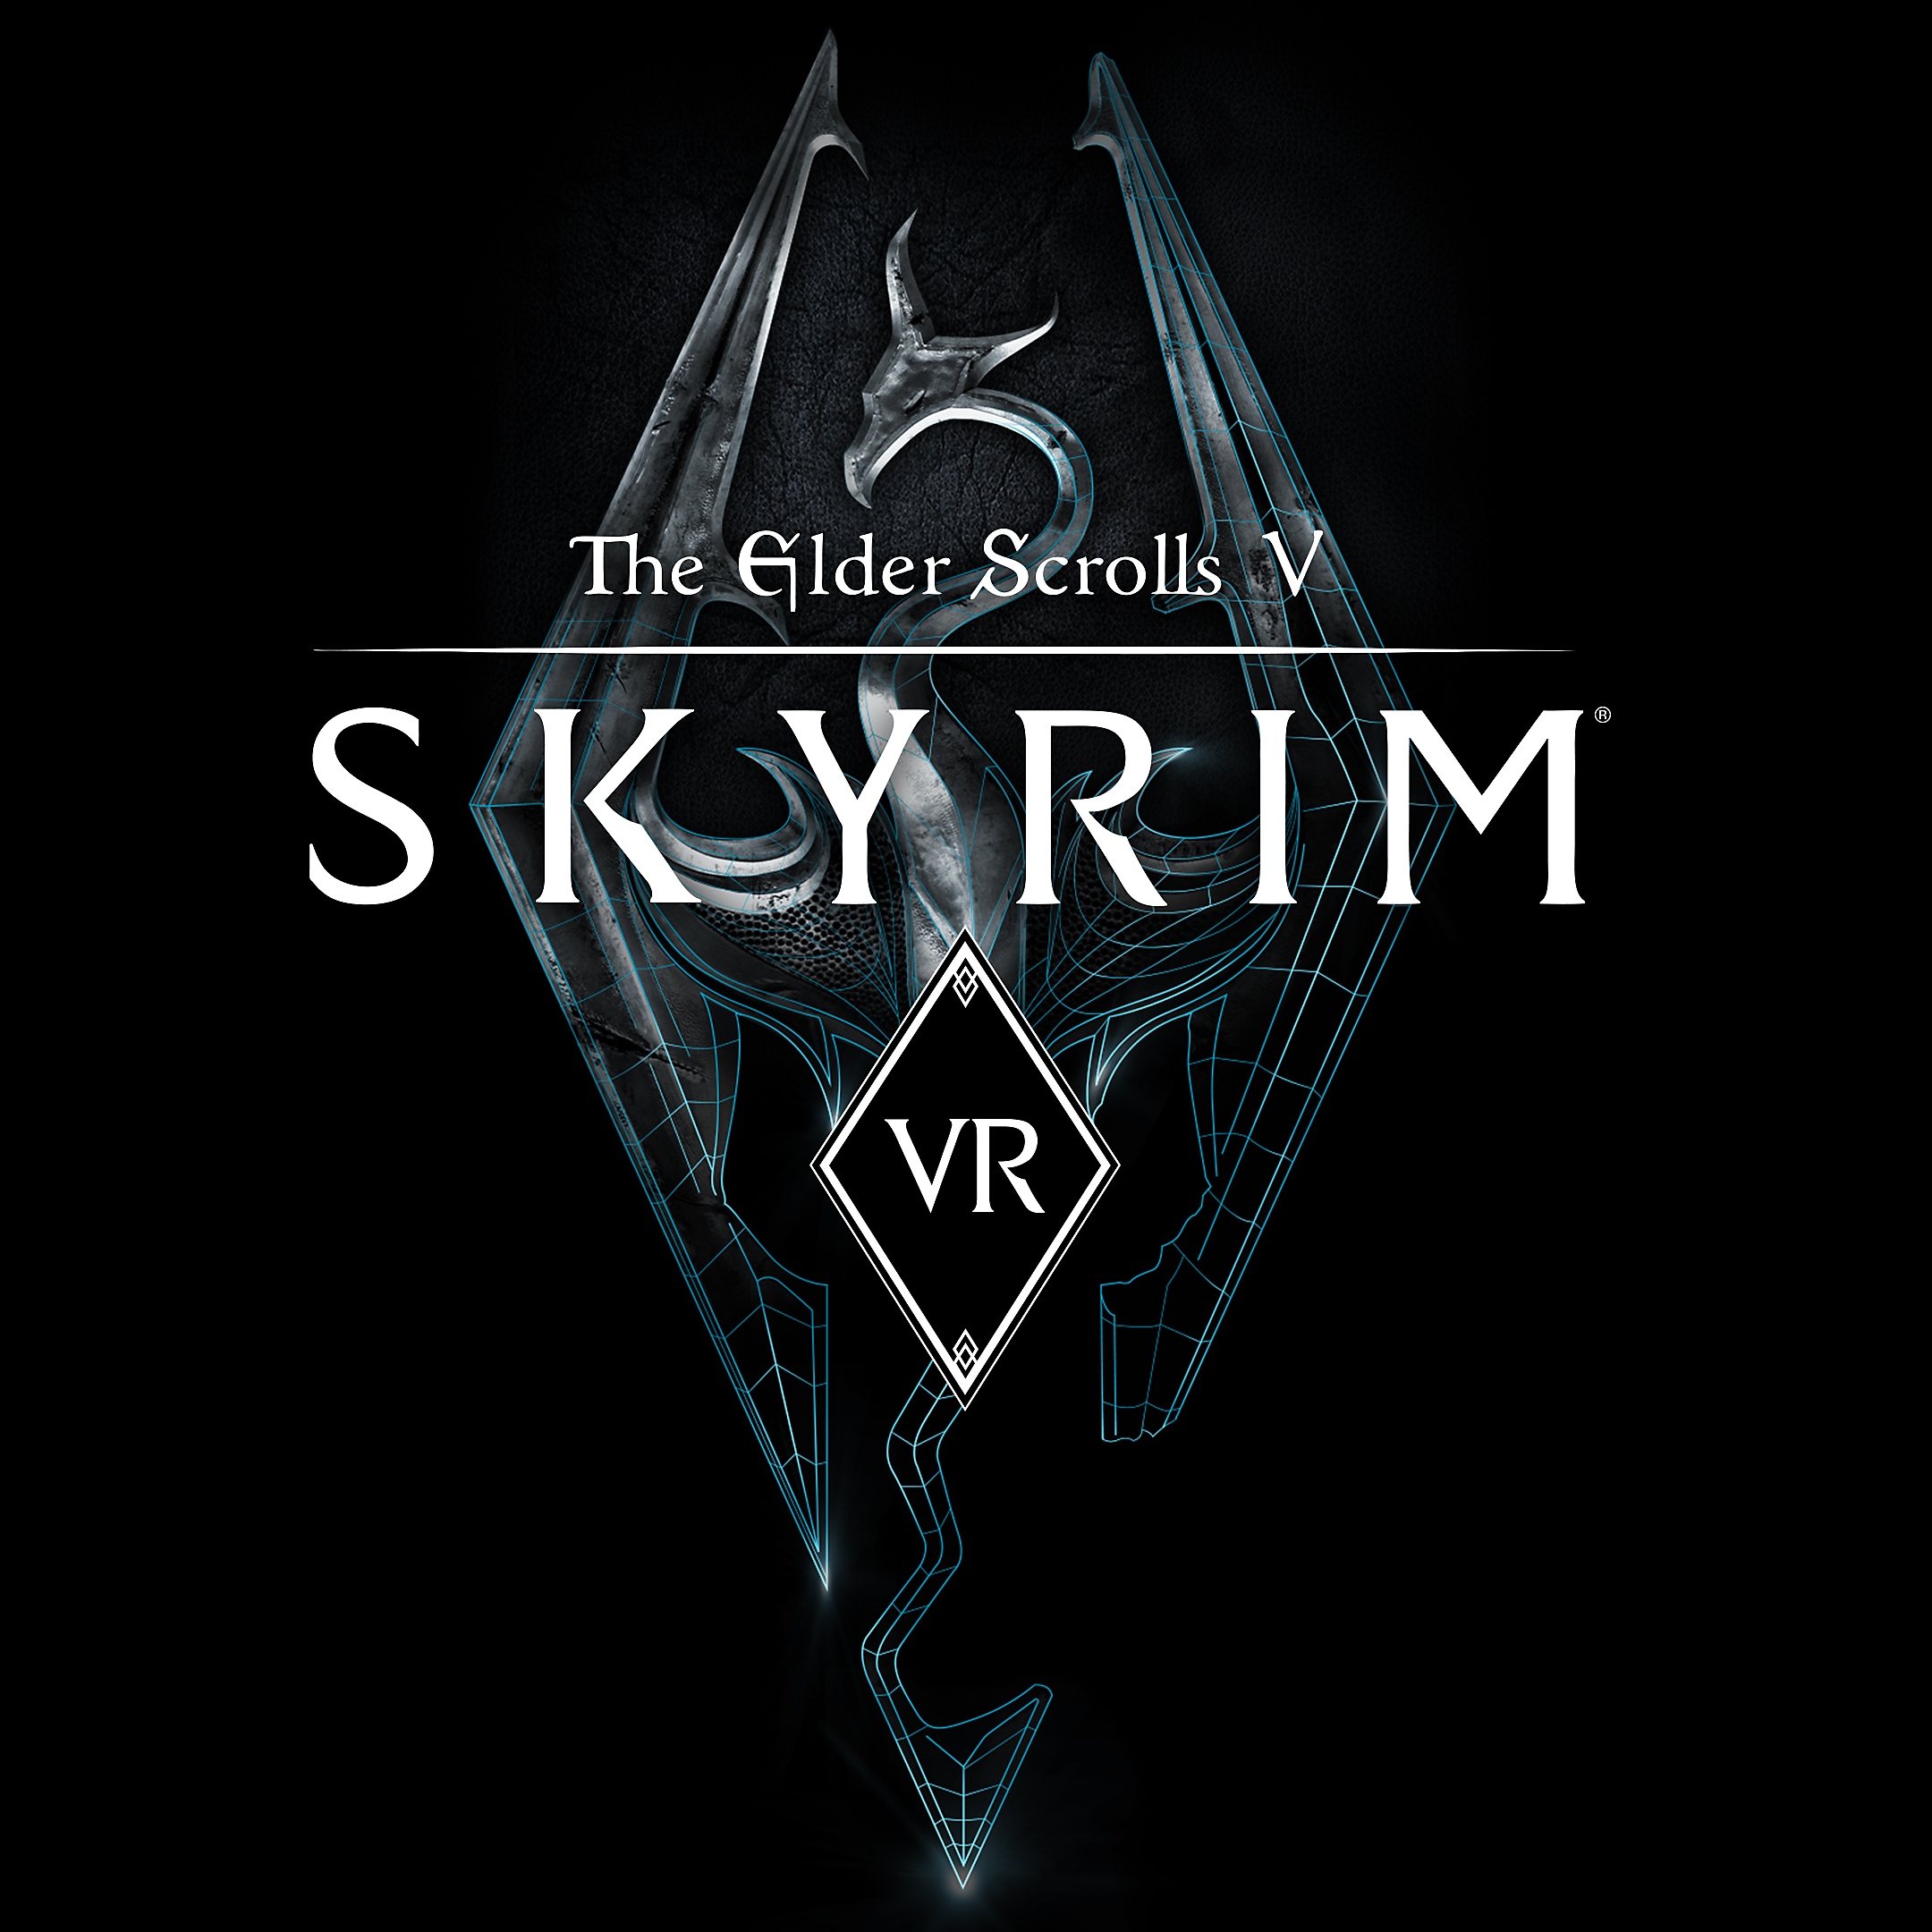 The Elder Scrolls V: Skyrim VR packshot